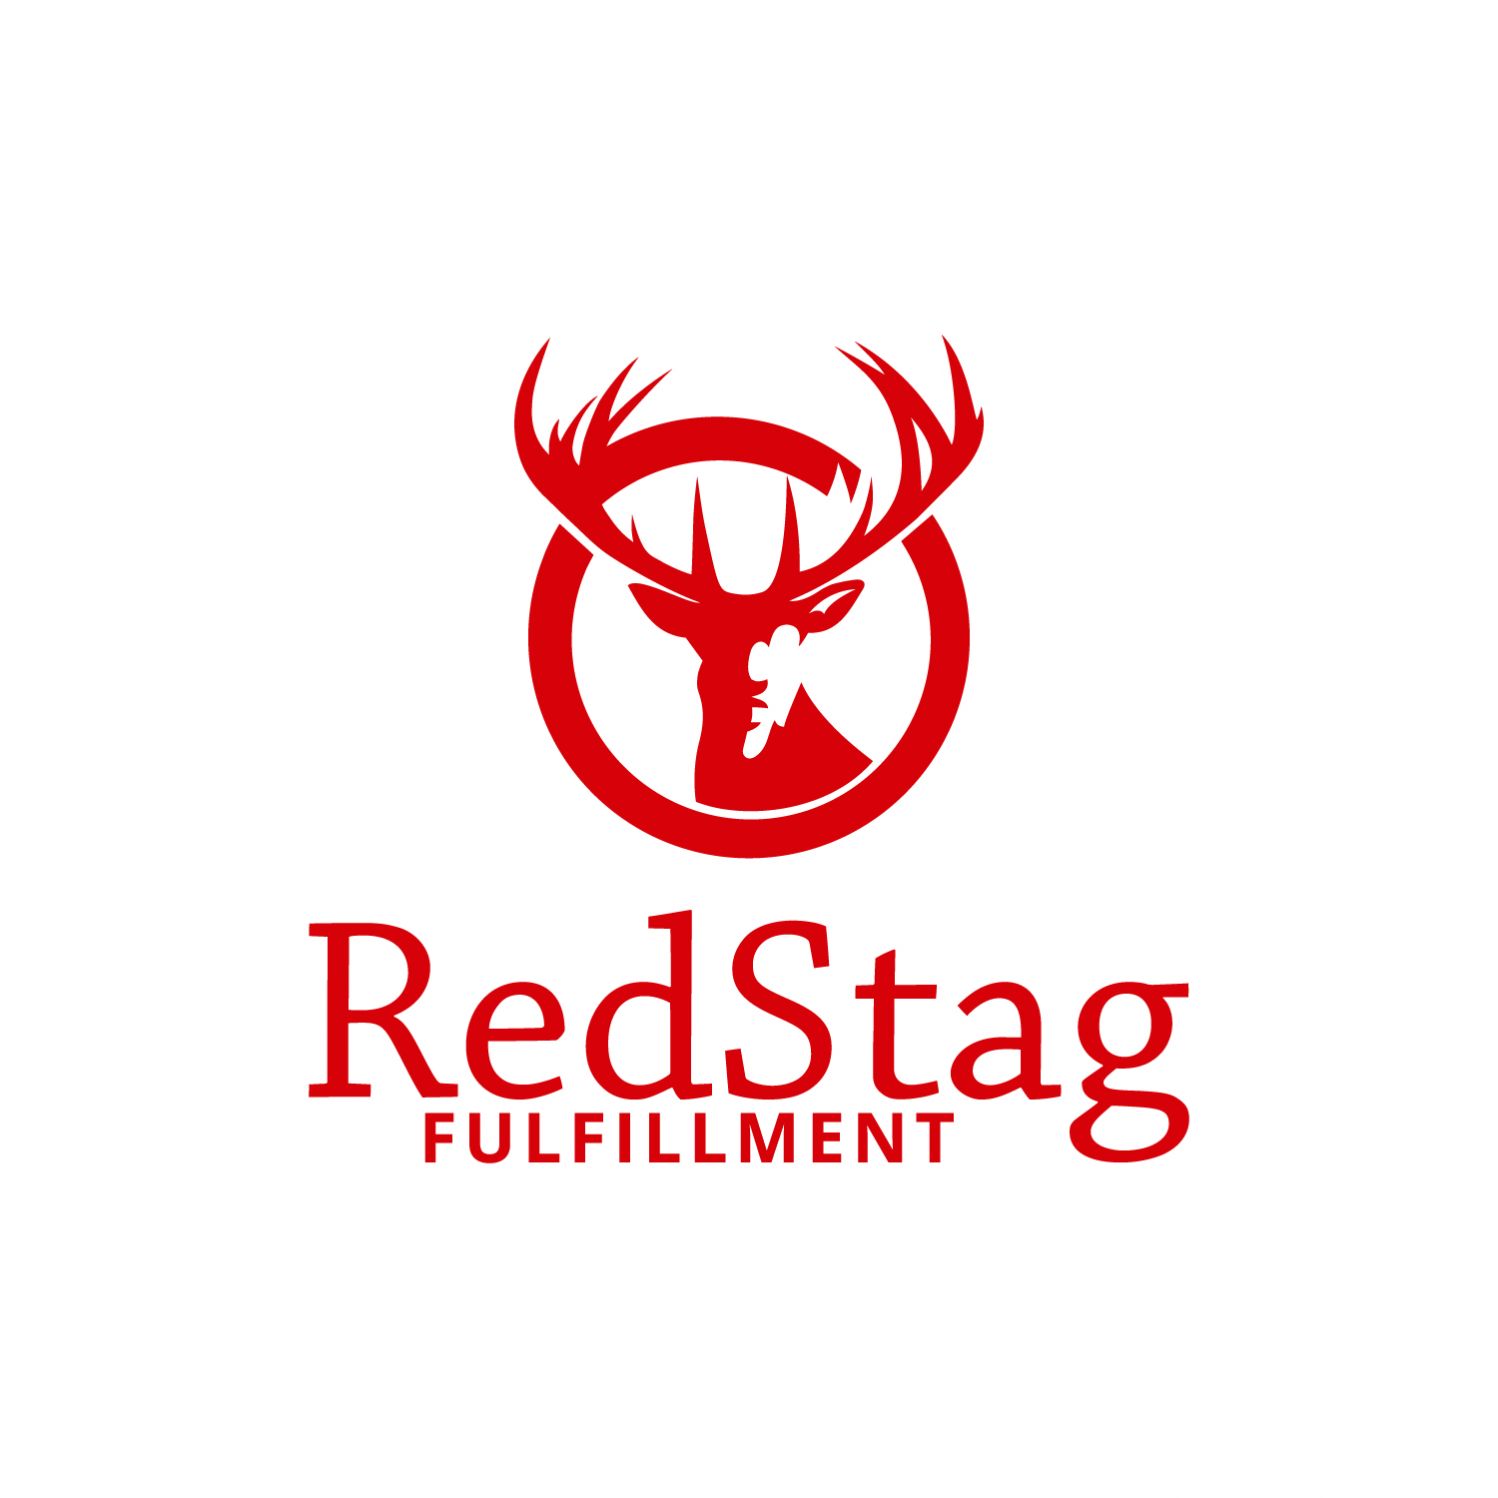 RedStagFulfillment Logo